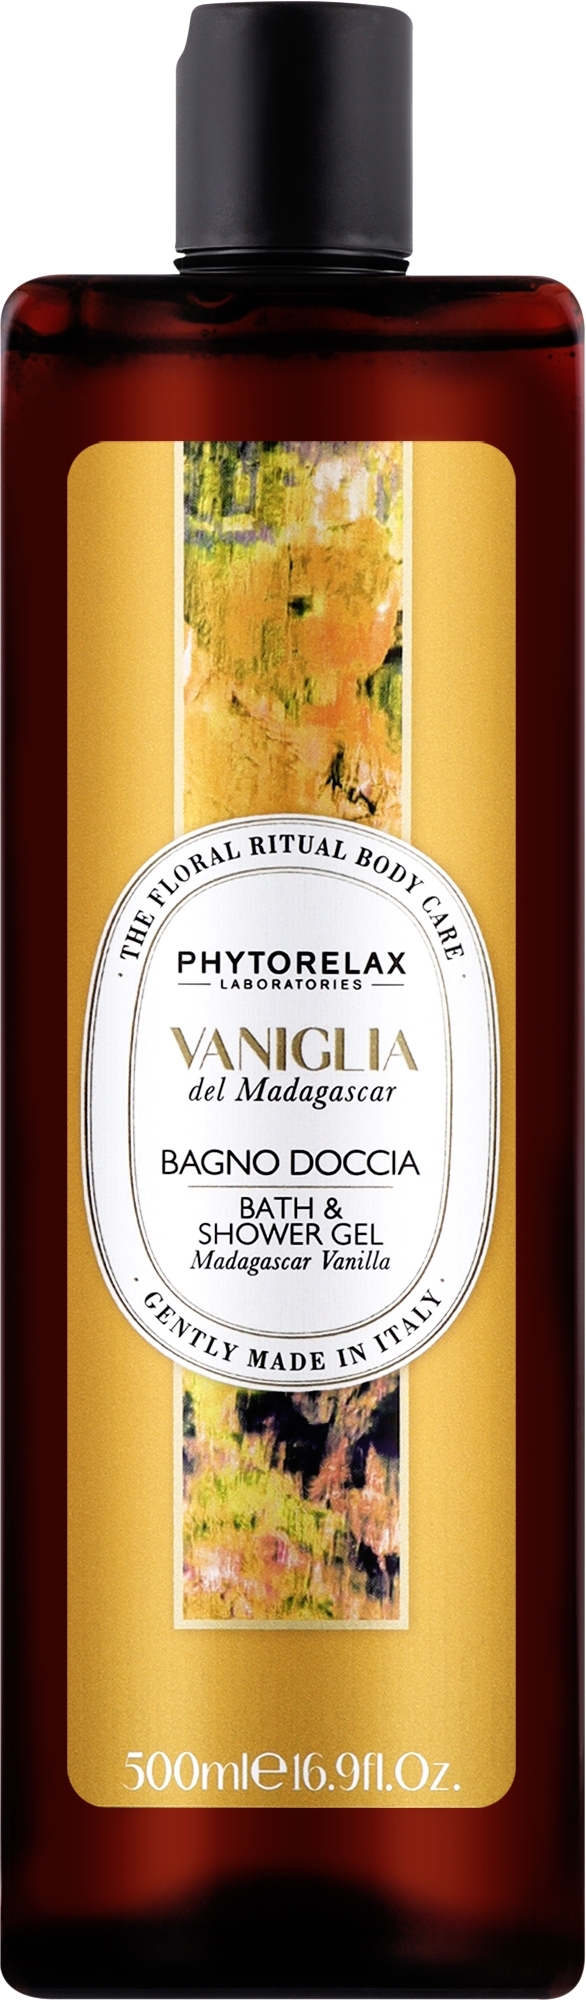 Dusch- und Badegel Madagascar Vanilla - Phytorelax Laboratories Floral Ritual Bath & Shower Gel — Bild 500 ml